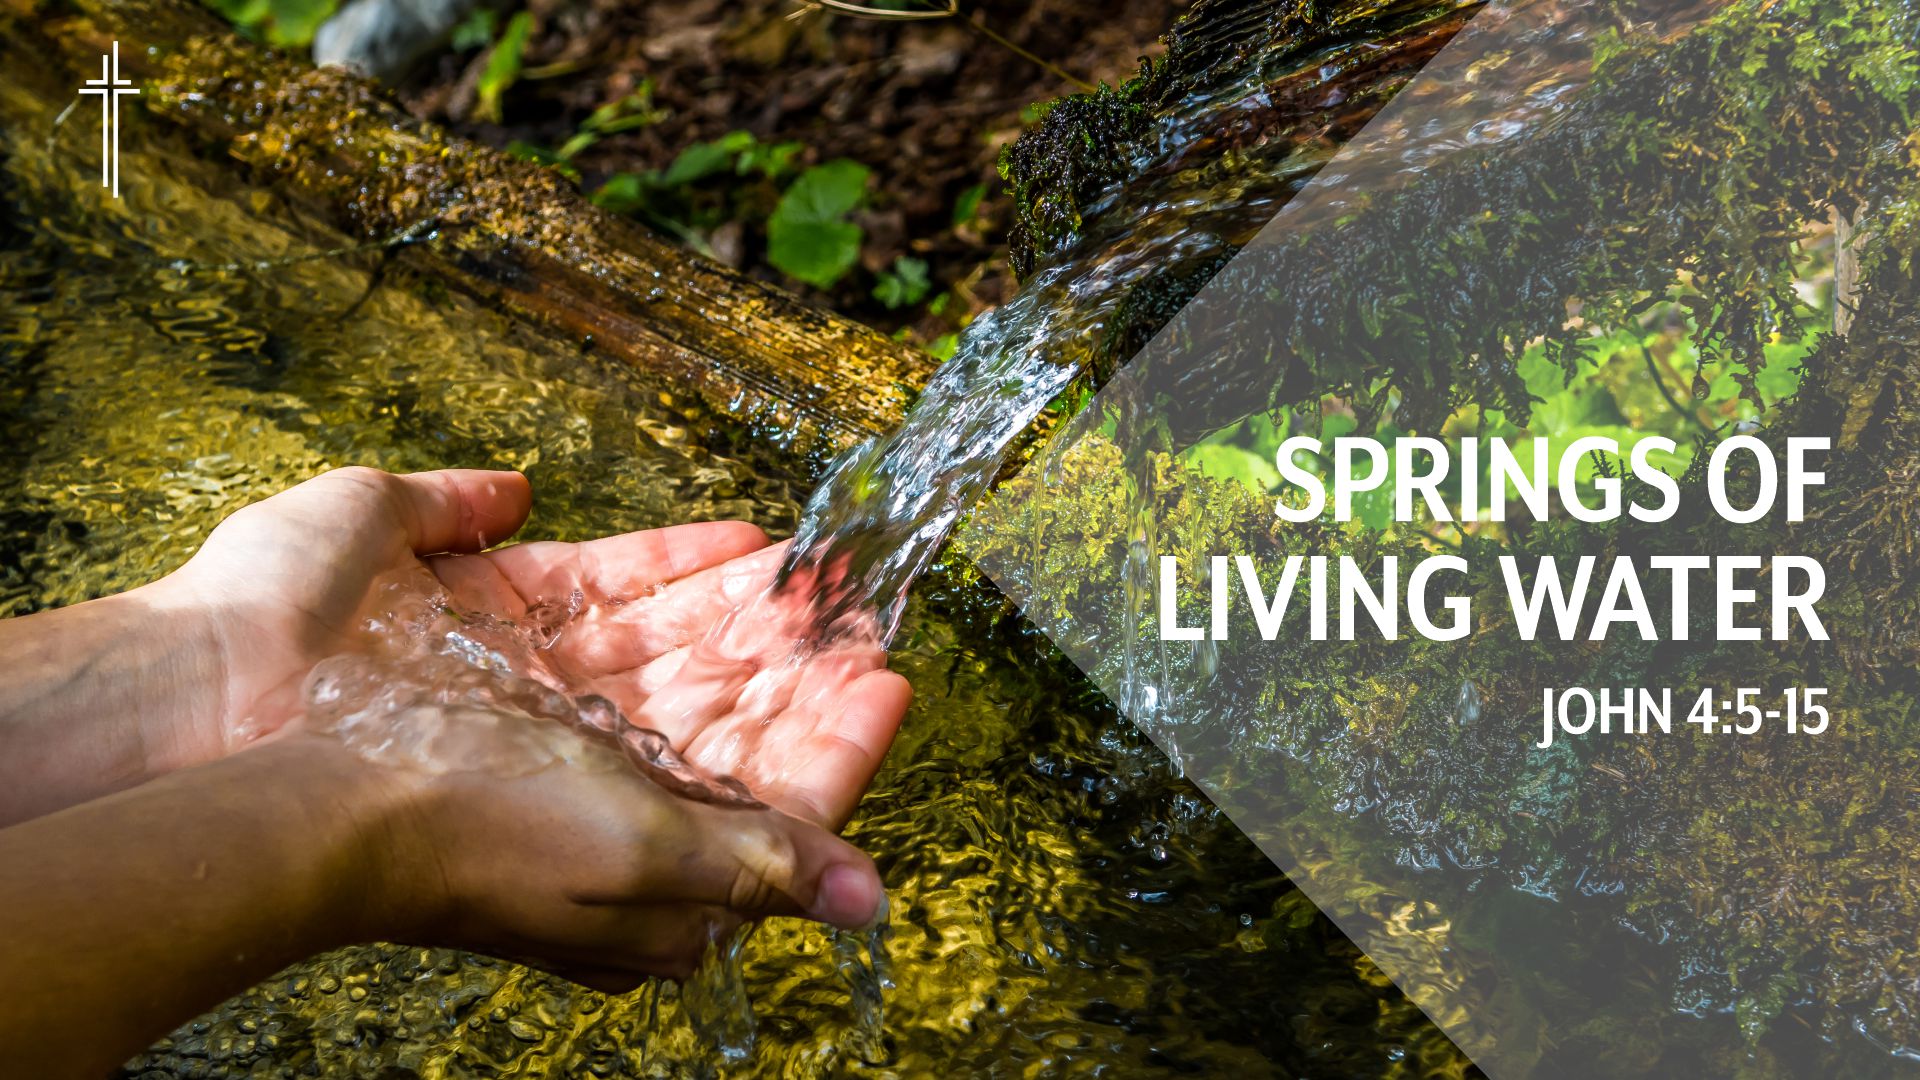 Springs of Living Water